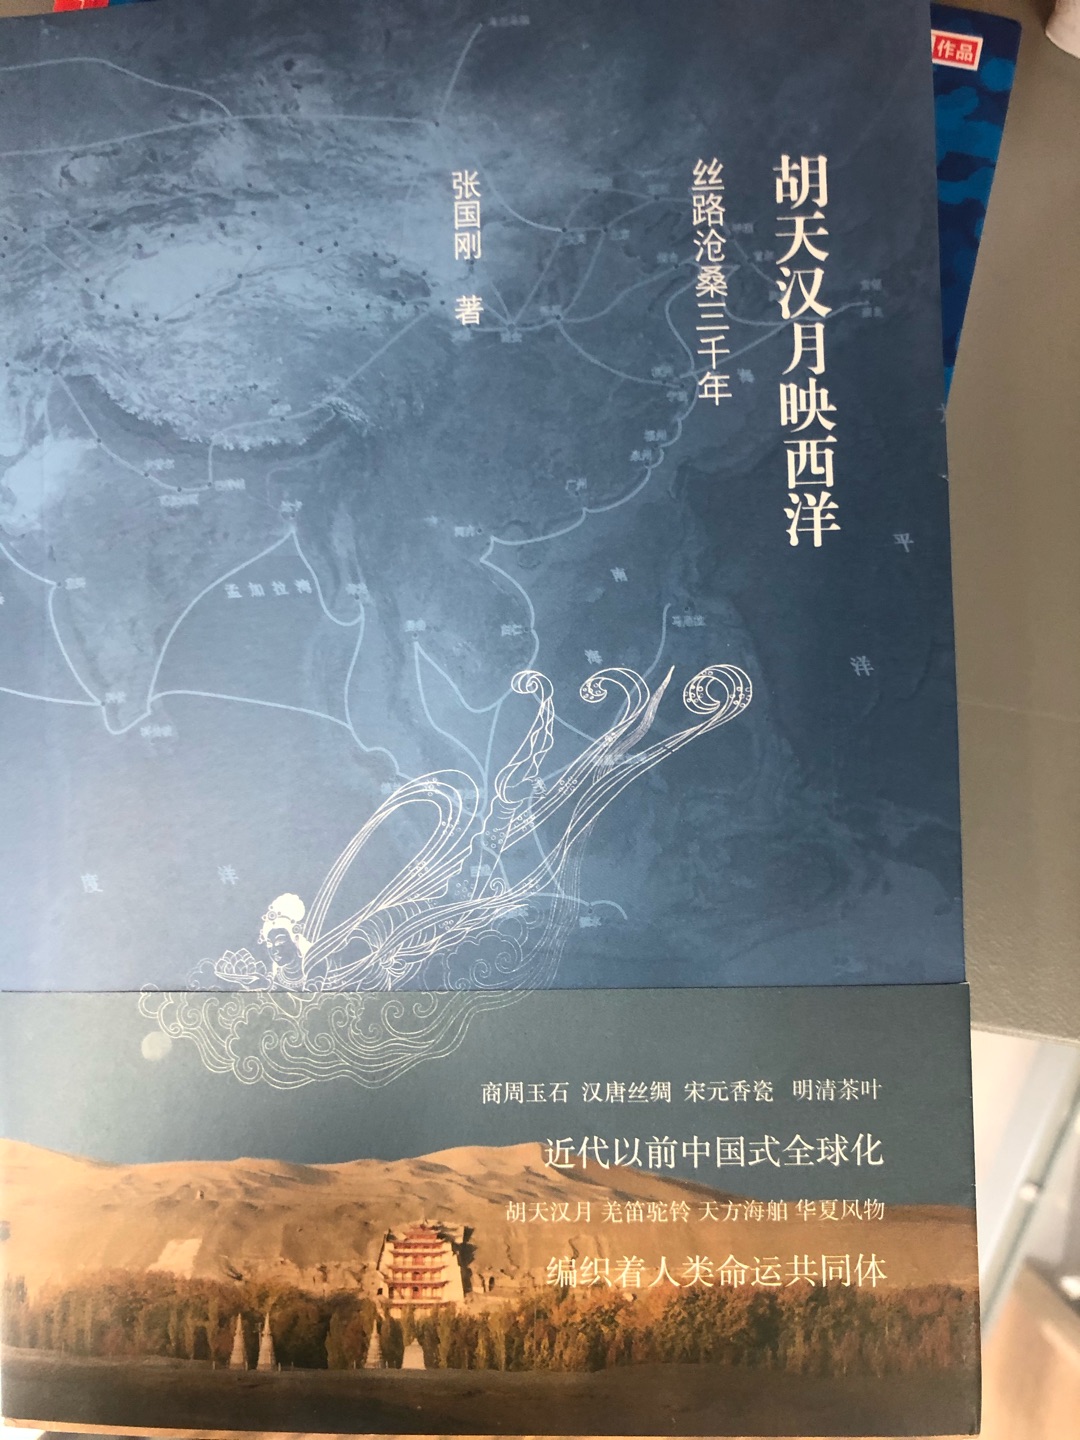 胡天汉月，羌笛驼铃、天方海舶，中国丝路沧桑三千年，都在这本胡天汉月映西洋中